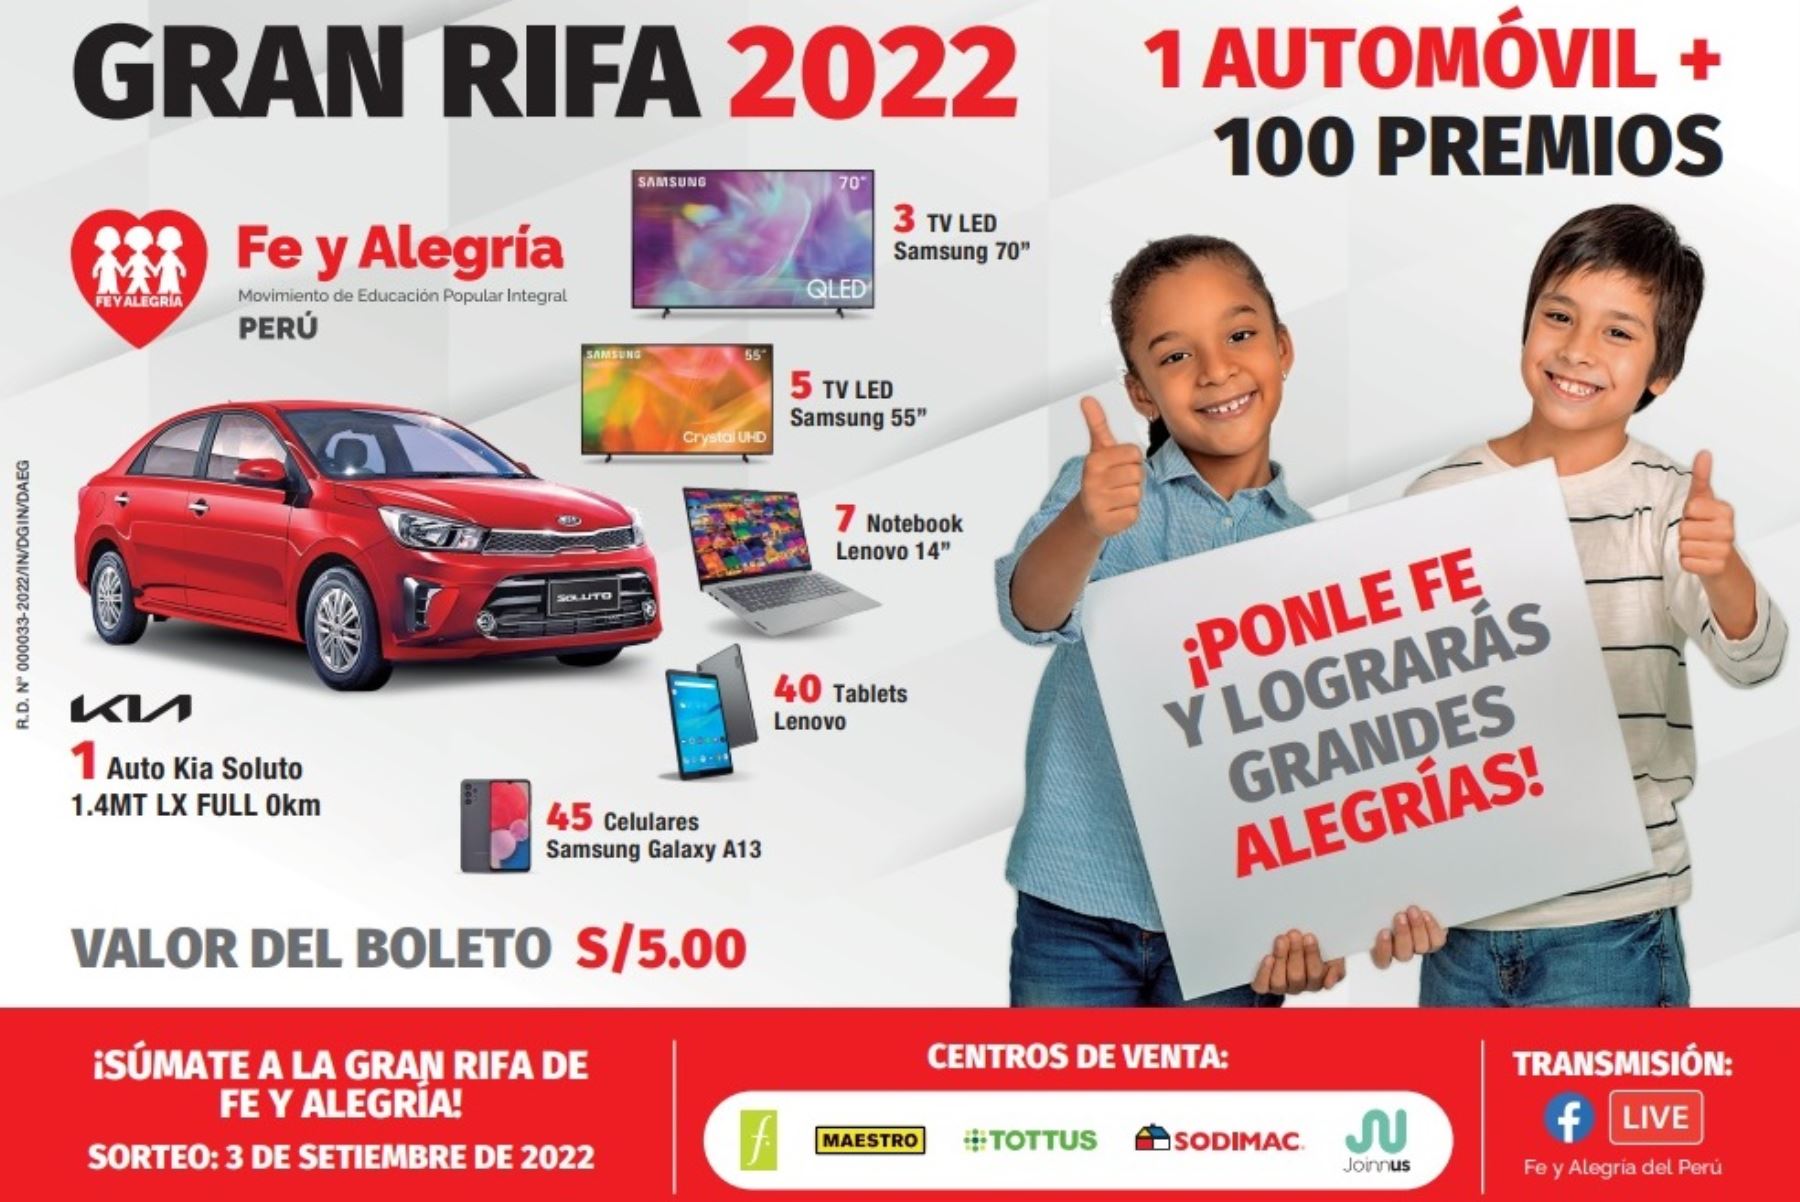 Fe y Alegría lanza la Gran Rifa 2022 “Ponle Fe y Lograrás Grandes Alegrías”